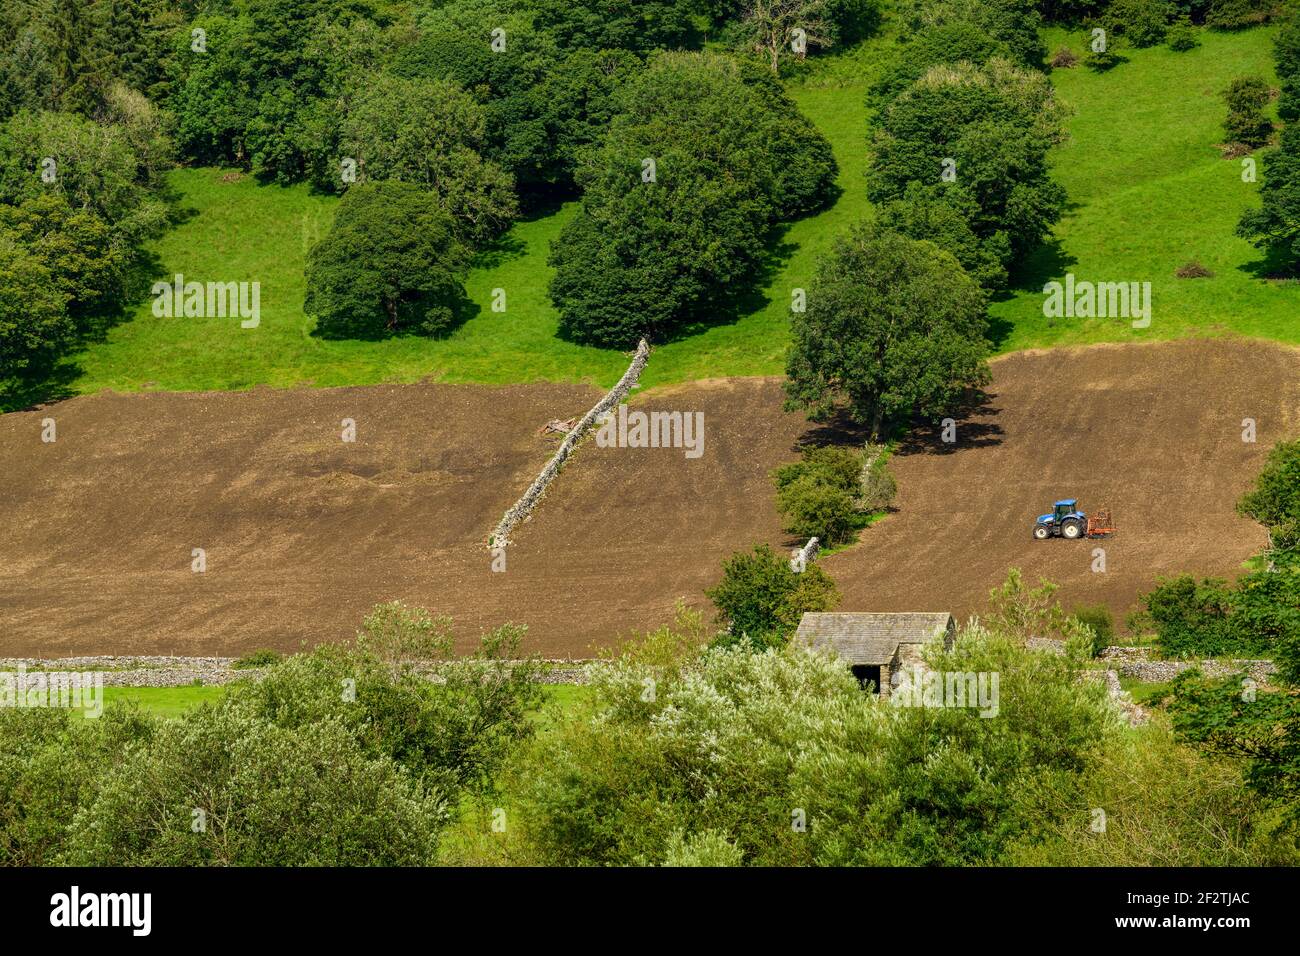 Tracteur travaillant sur de hautes pentes de champs à flanc de coteau escarpés (labourage de terre hereuse pour l'ensemencement) - Wharfe Valley, North Yorkshire, Angleterre, Royaume-Uni. Banque D'Images